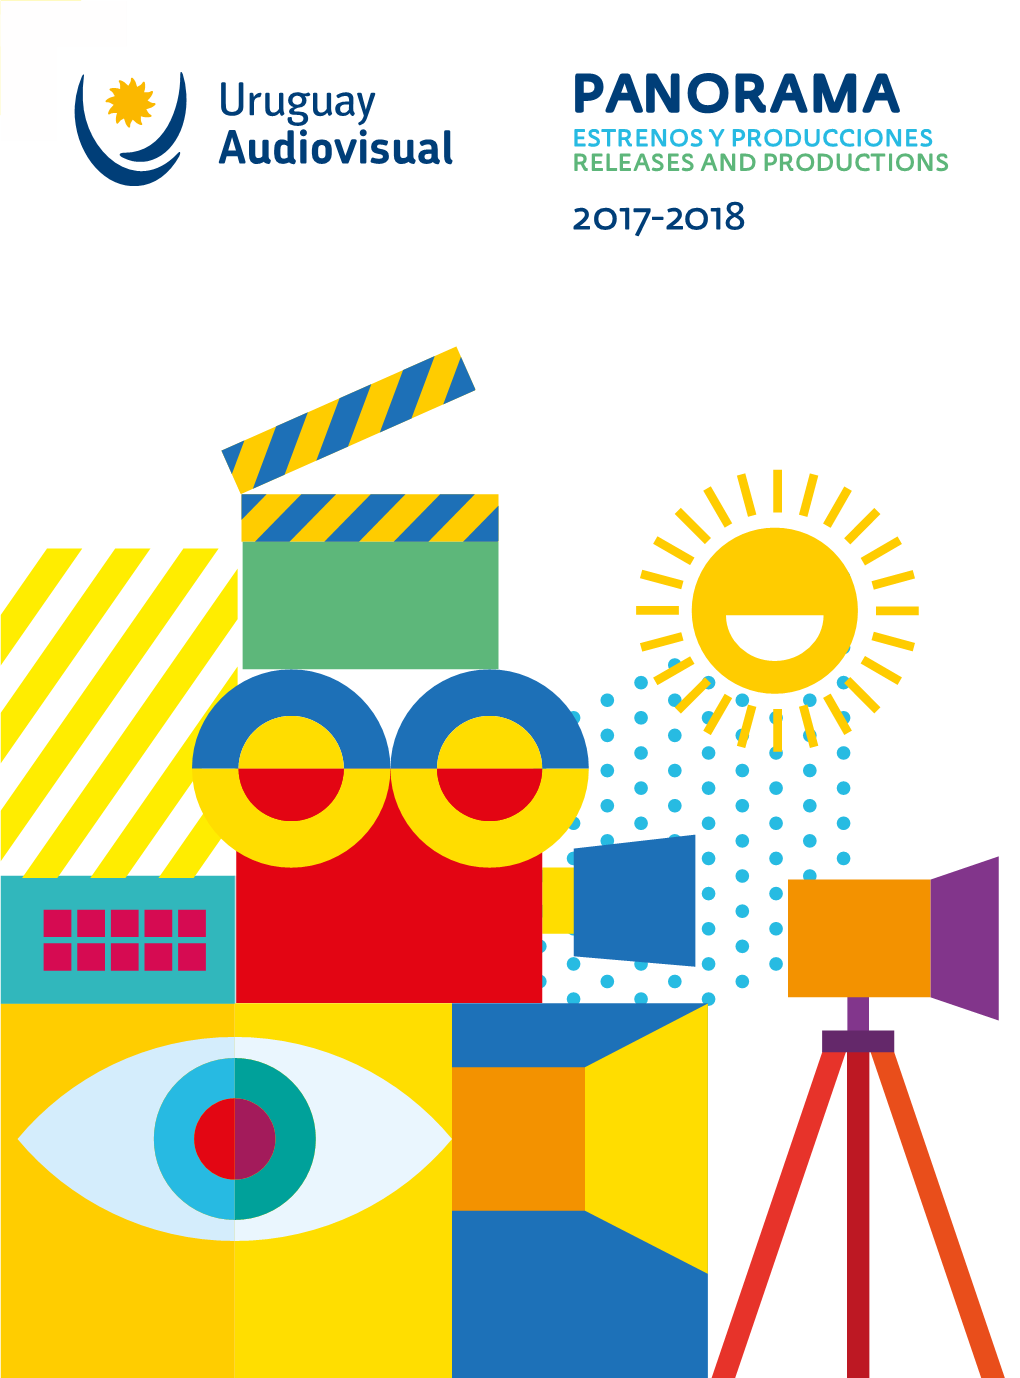 Panorama Estrenos Y Producciones Releases and Productions 2017-2018